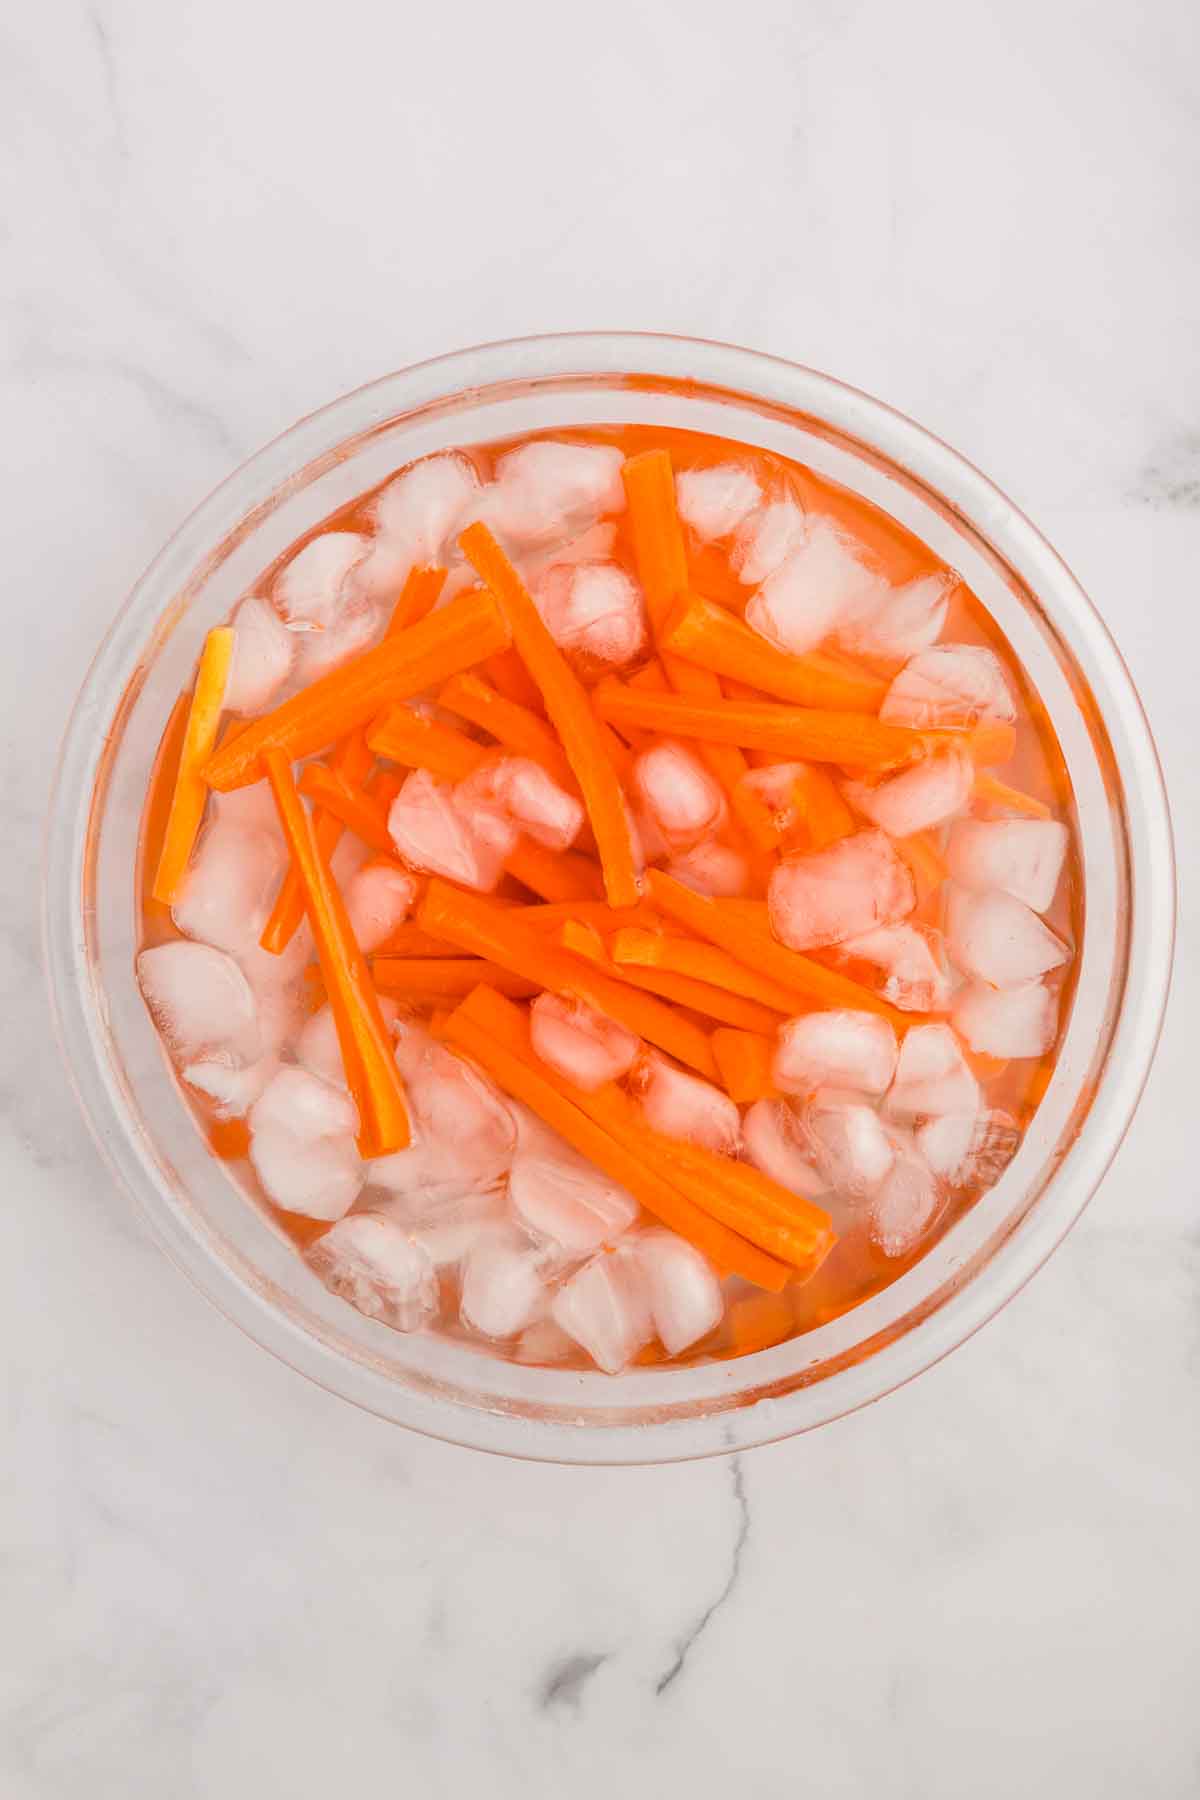 Carrots in an ice bath. 